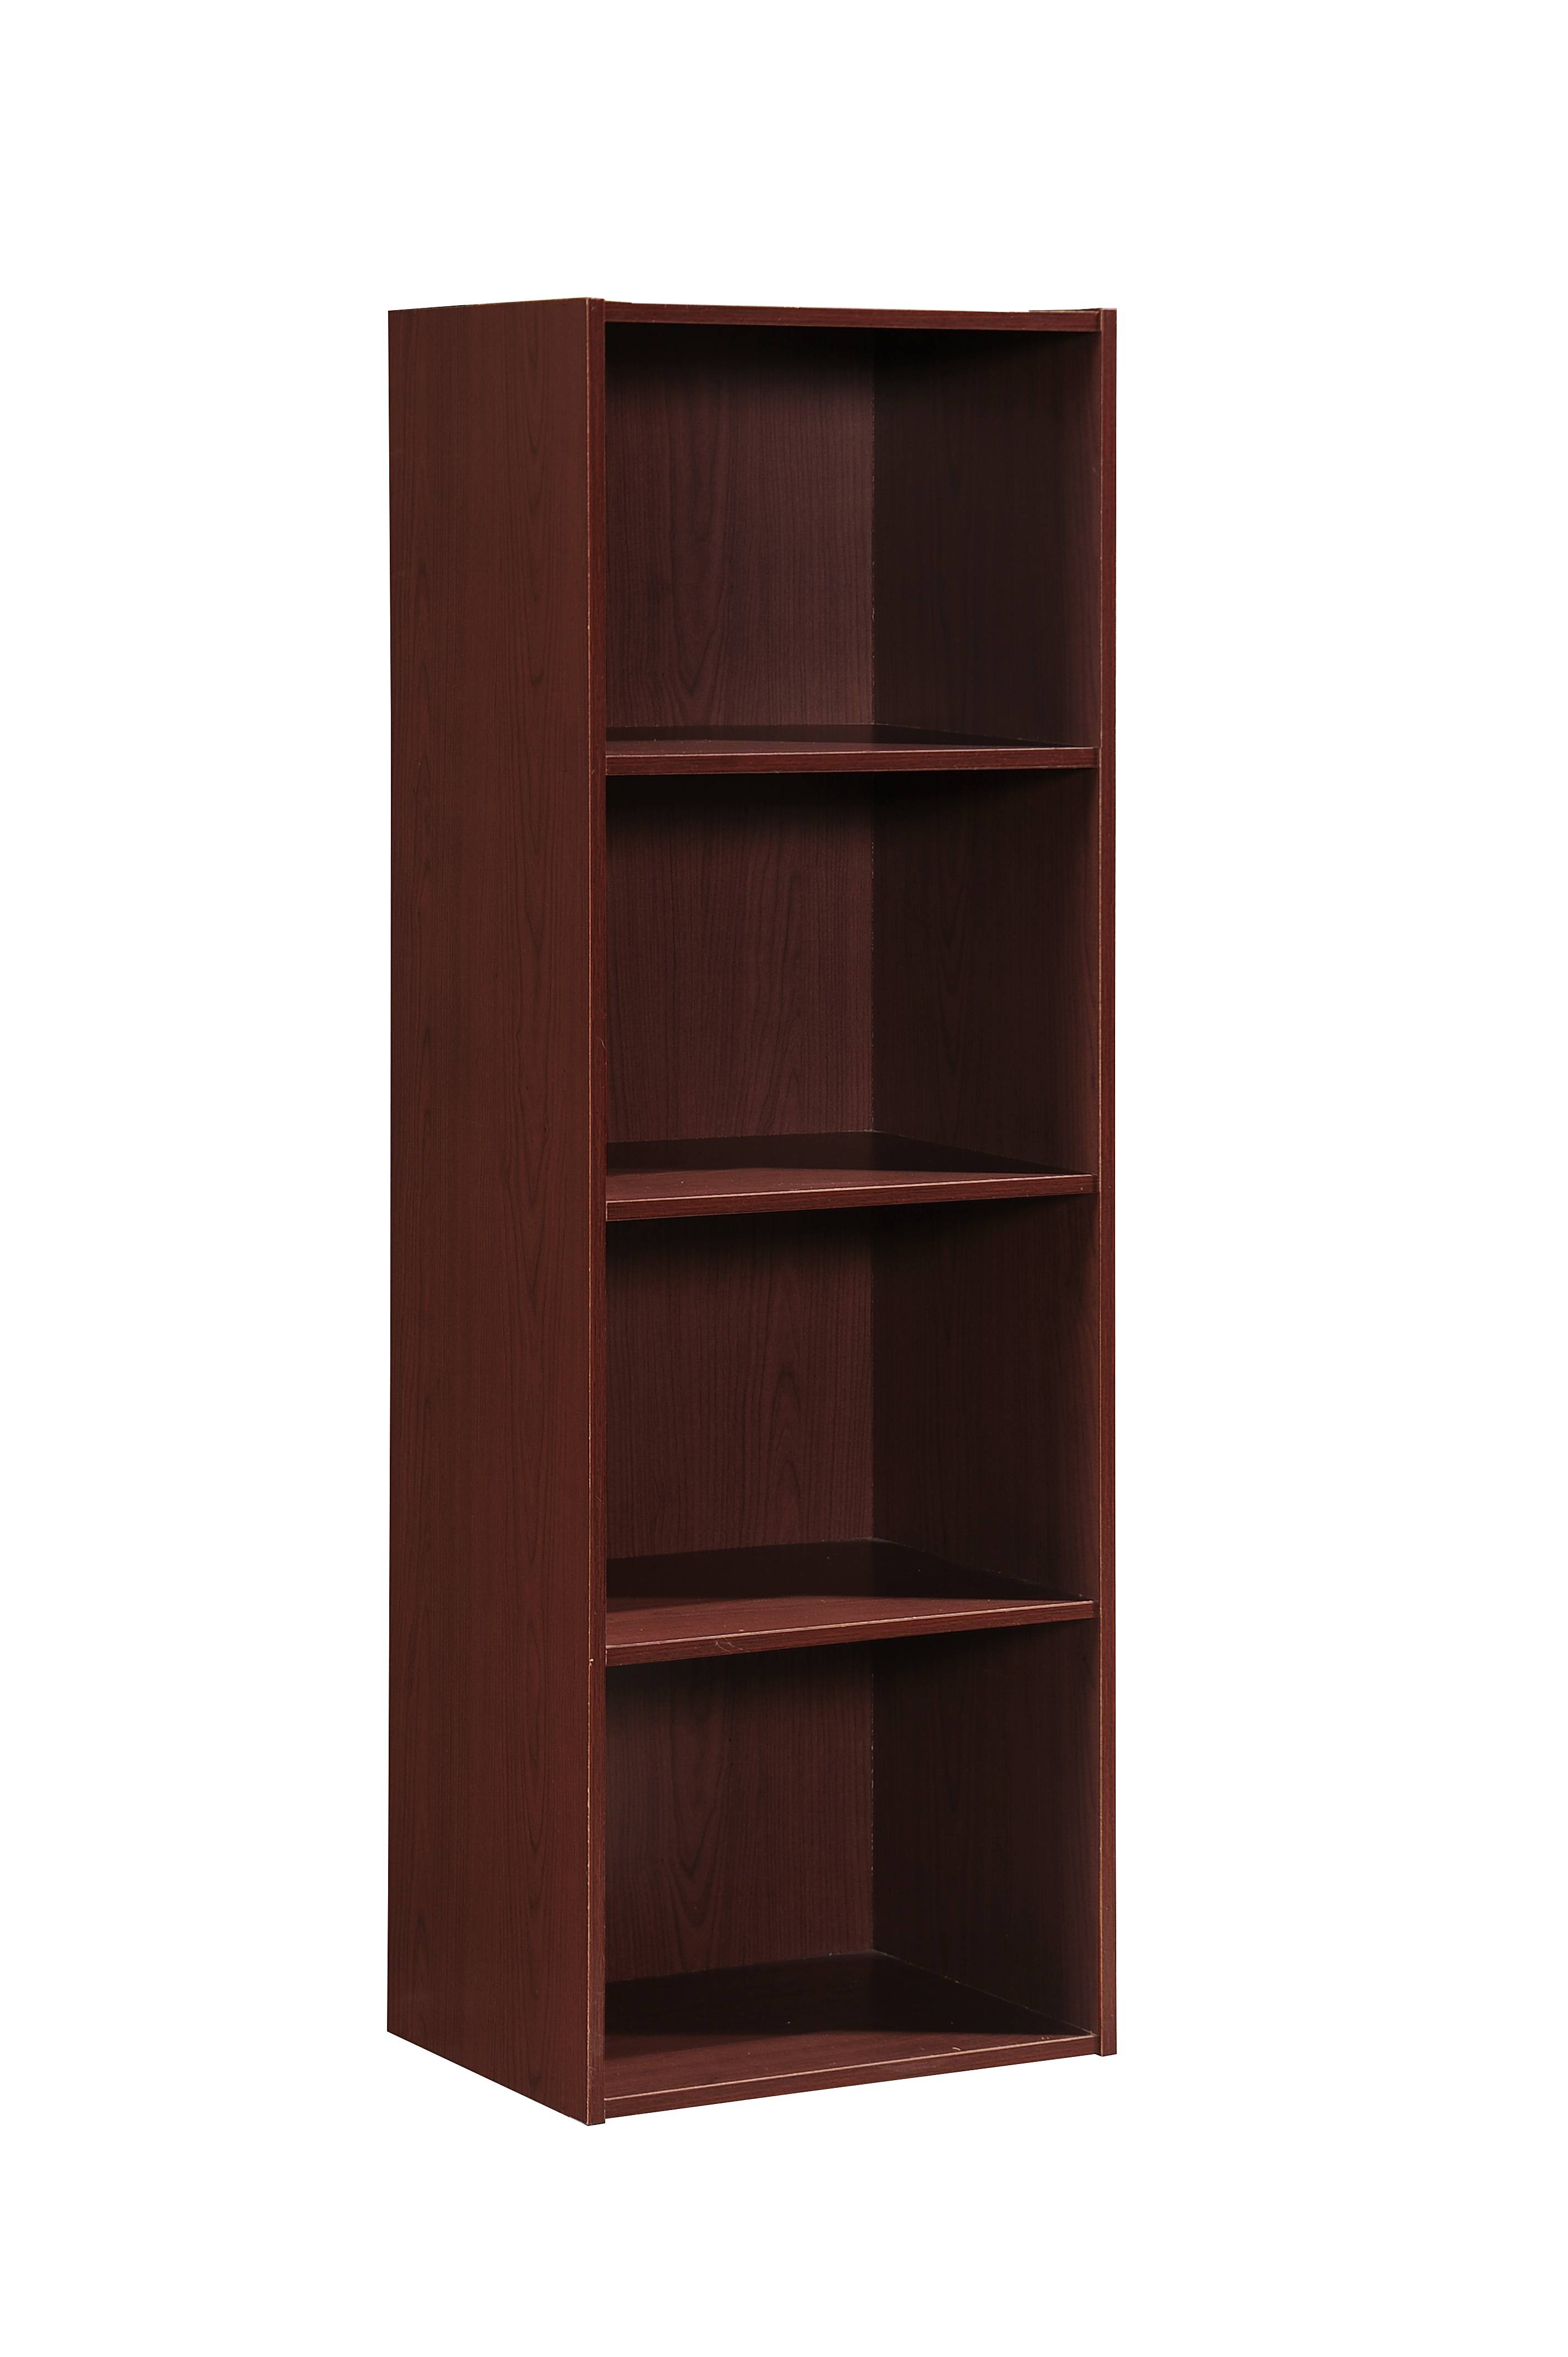 Hodedah 4-Shelf Wood Bookcase, Mahogany - image 1 of 5